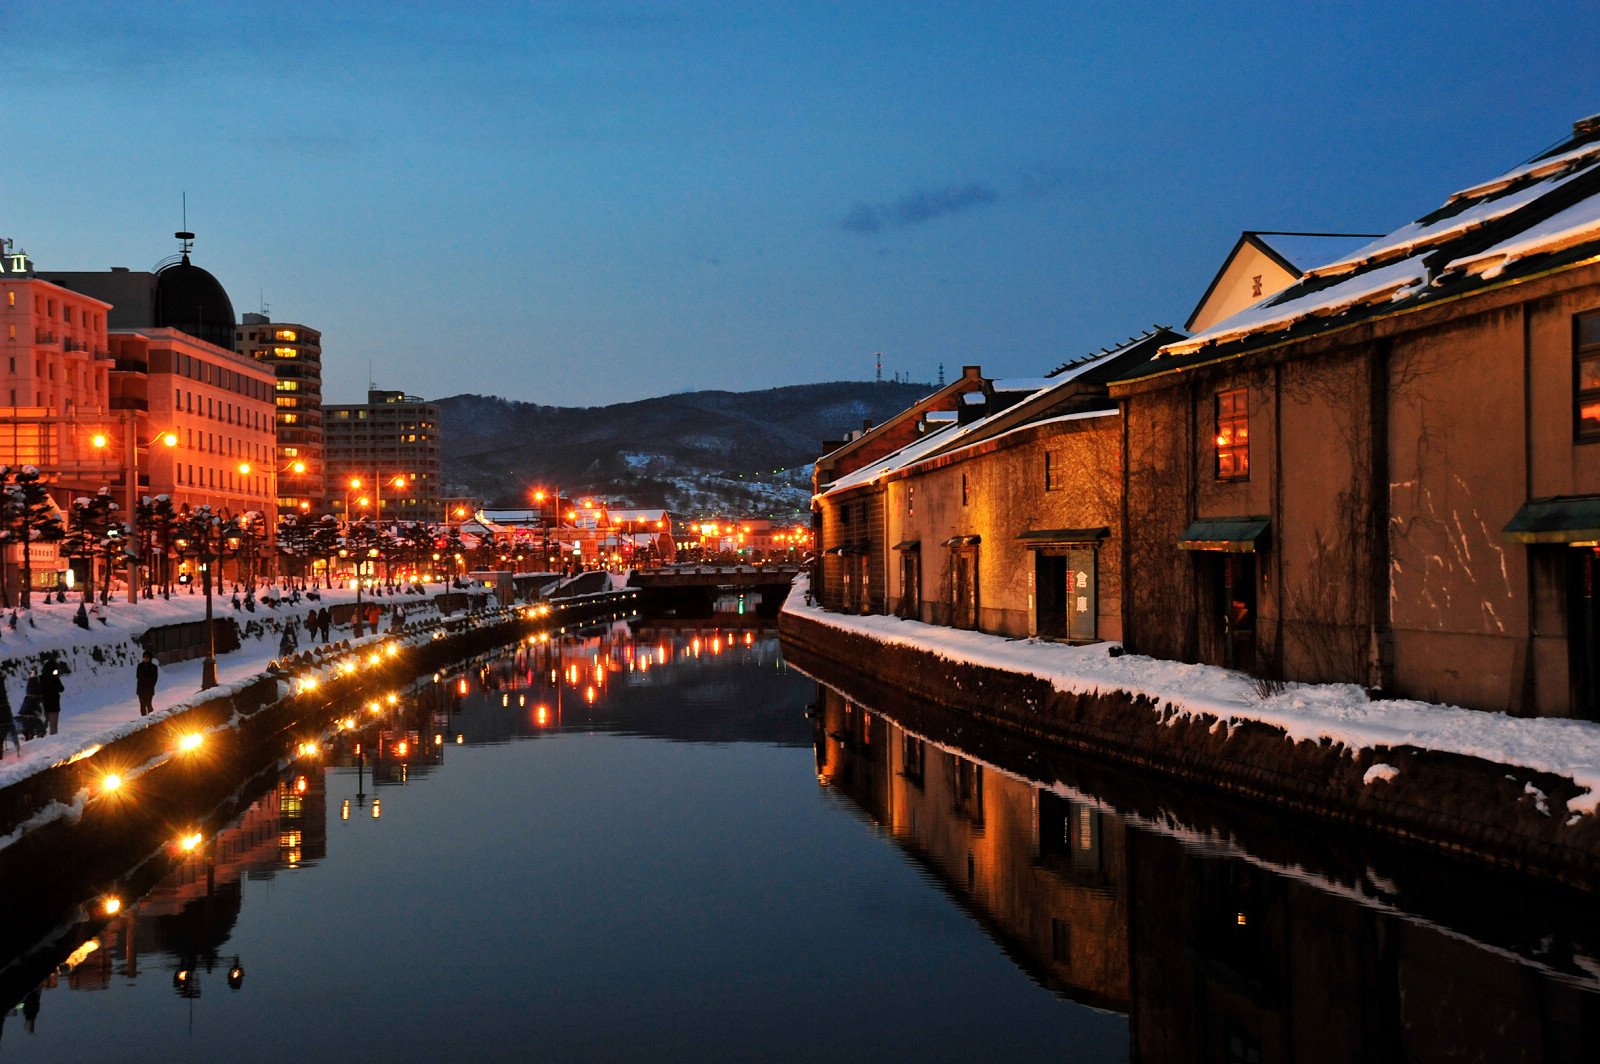 「焼印工房」小樽キャスト製作所のある小樽の風景